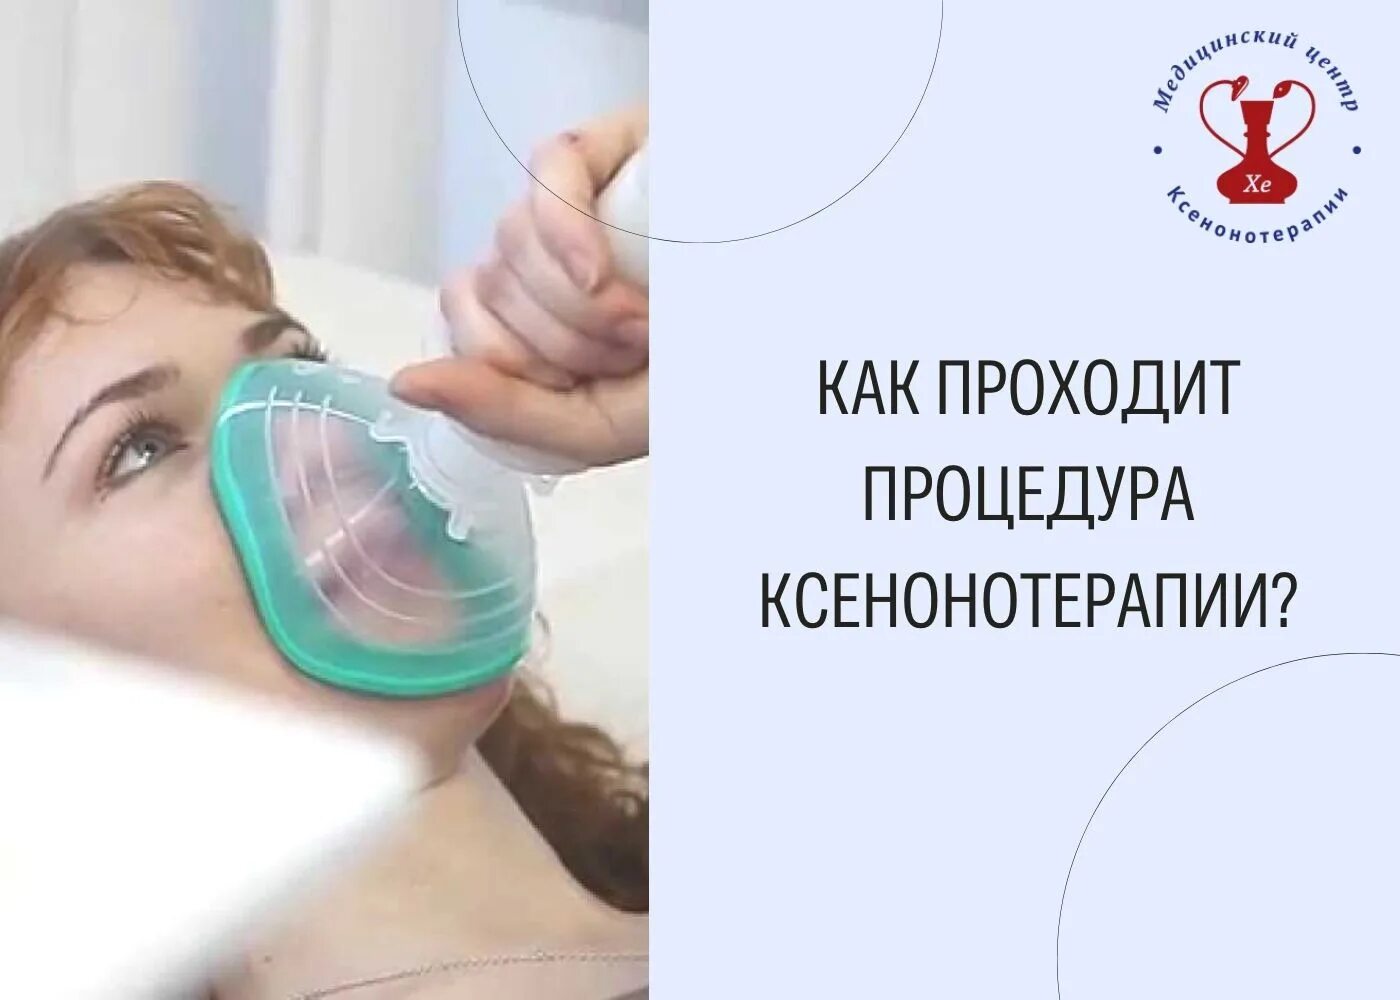 Ксенонотерапия стоимость тайм клиник. Ксенонотерапии. Ксенонотерапия фото. Ксенонотерапия в Москве. Аппарат для ксенонотерапии.